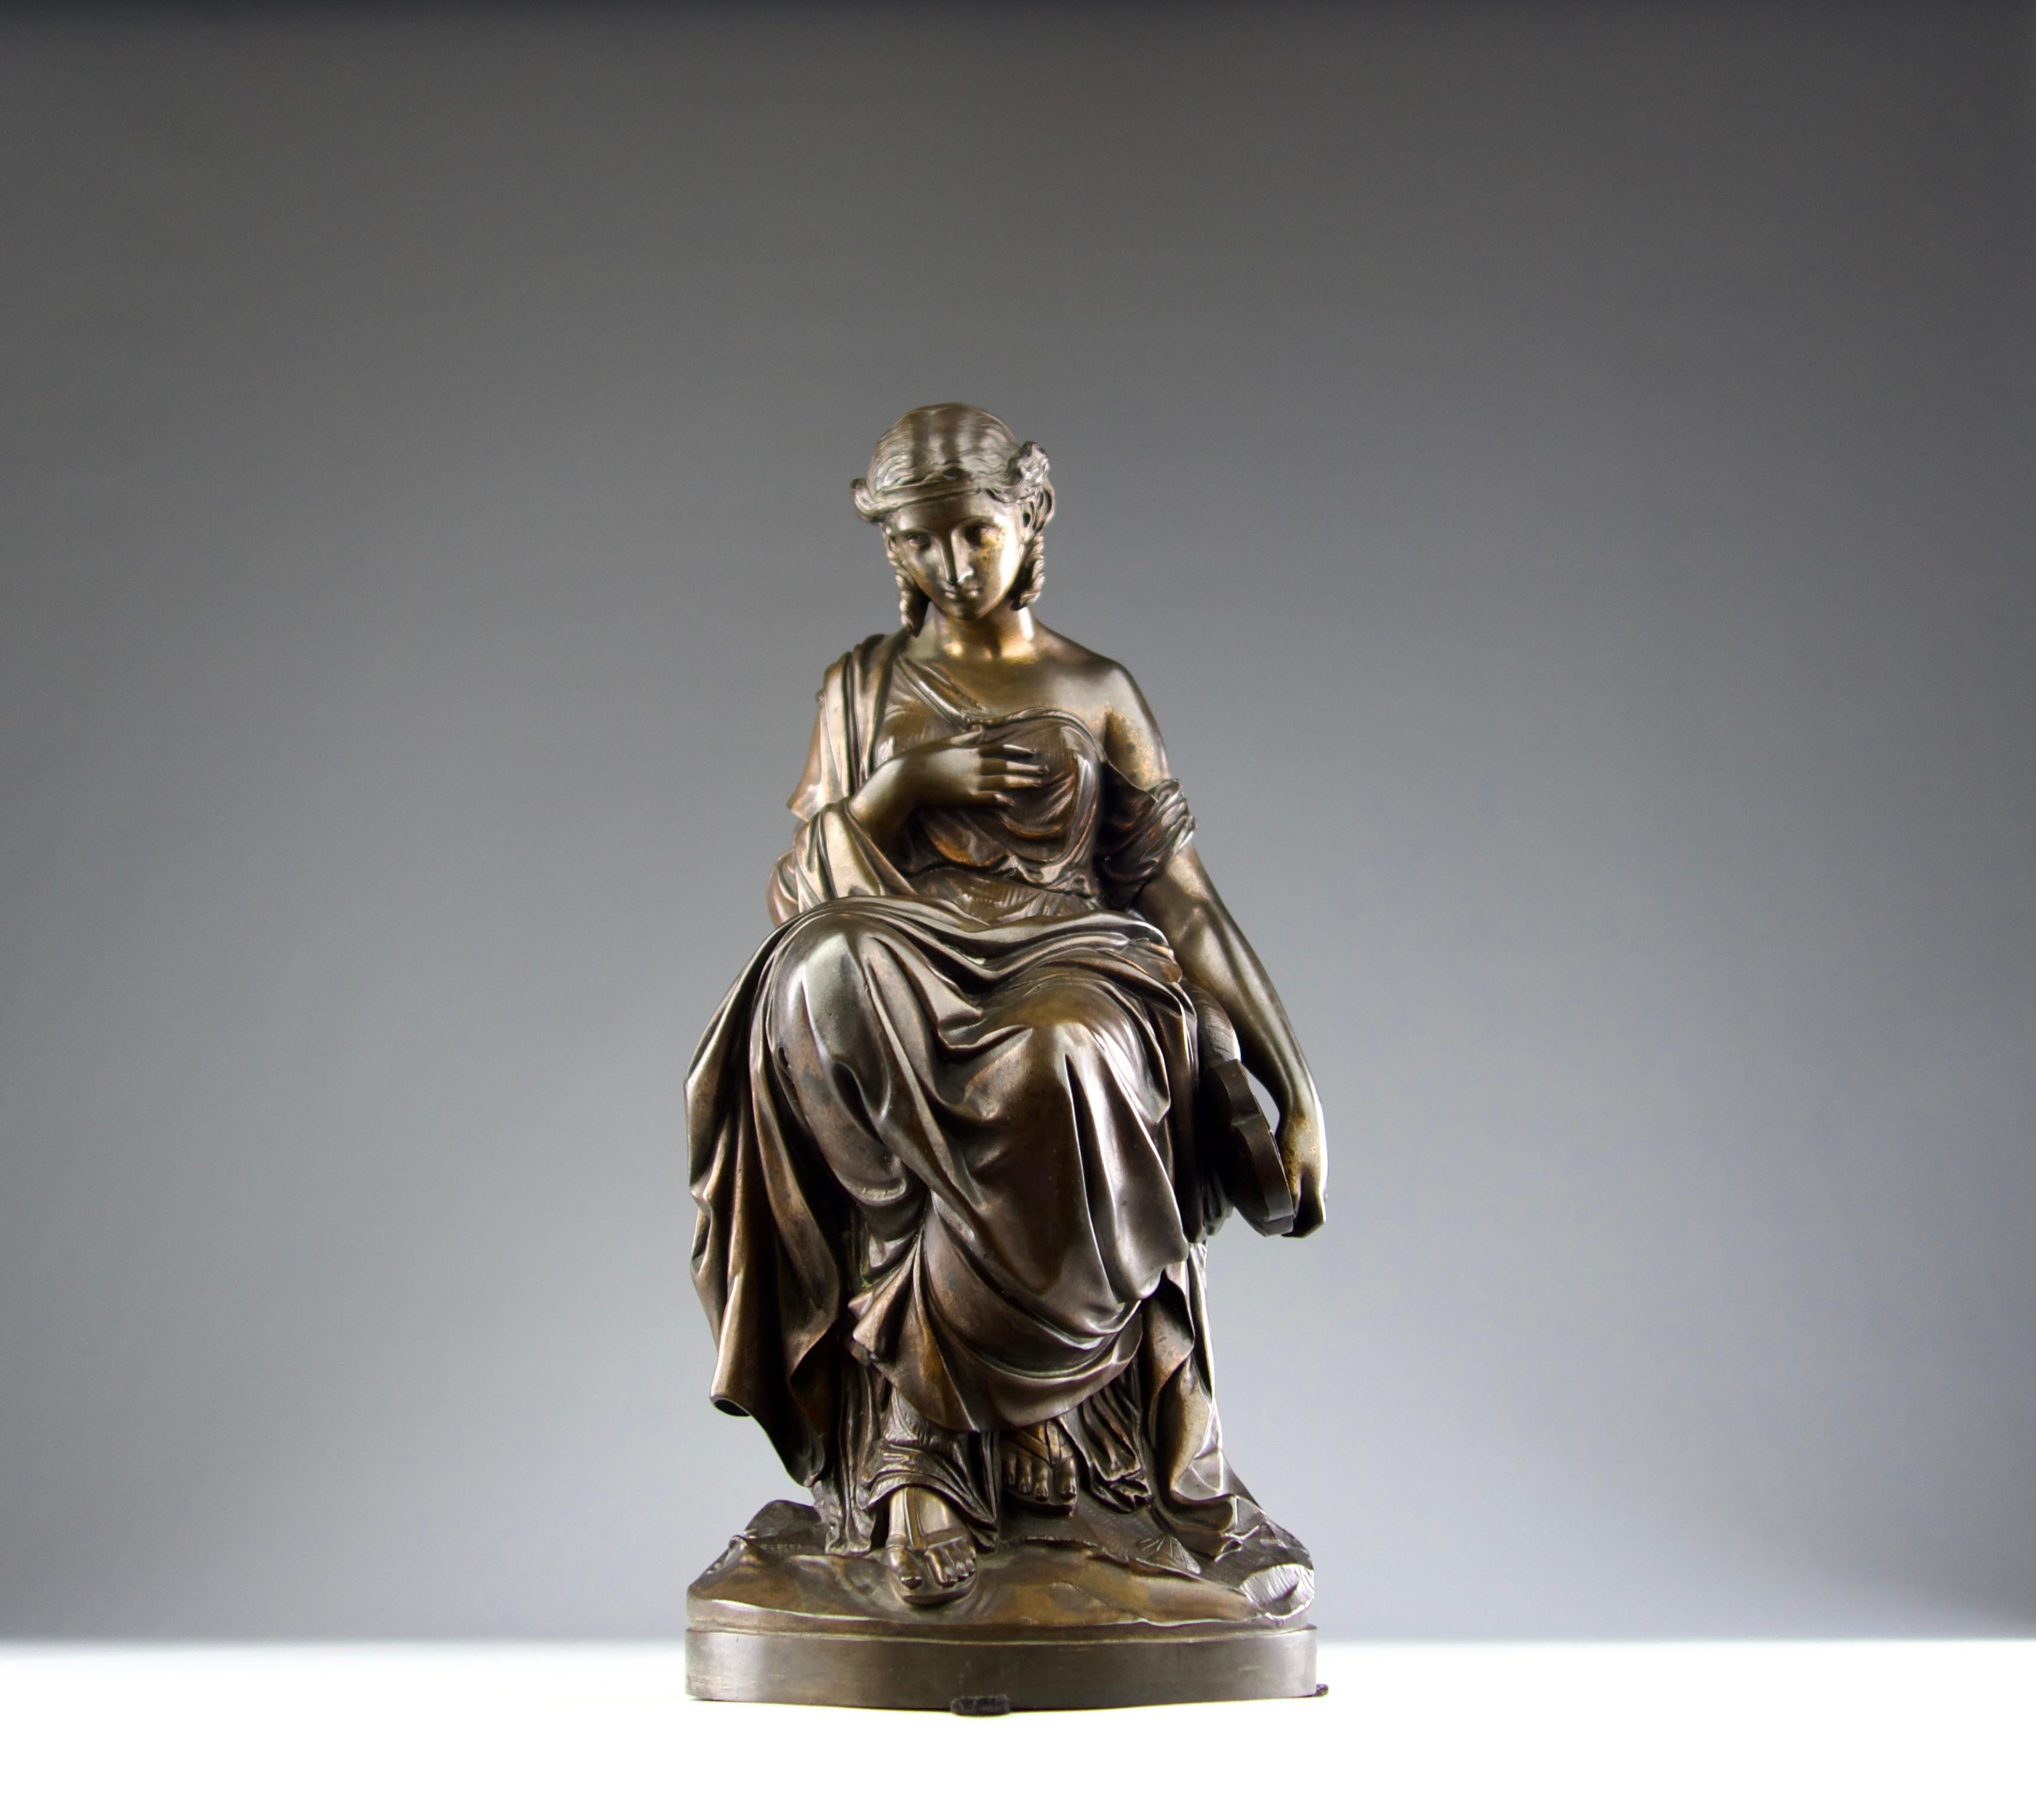 Superbe et rare sculpture en bronze d'Émile Nestor Joseph Carlier (1849-1927) représentant la poétesse grecque archaïque Sappho. Cette sculpture a été fondue par la fonderie Albinet & Coulon. Elle est signée par l'artiste et la fonderie.

En très